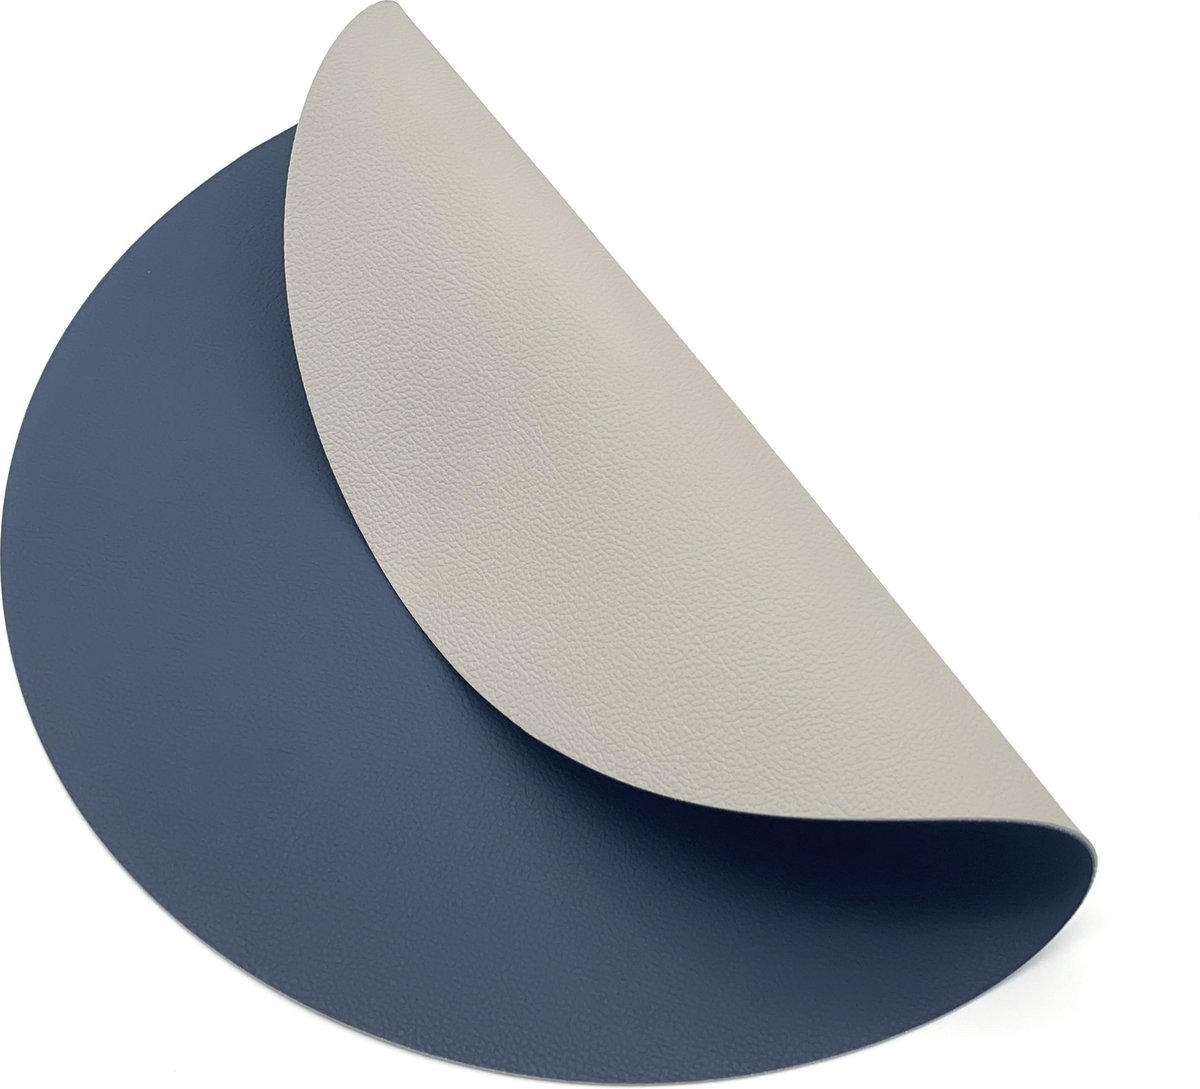 Luxe placemats lederlook - 6 stuks - ROND blauw/grijs - 38 cm - dubbelzijdig - leer - leatherlook placemat